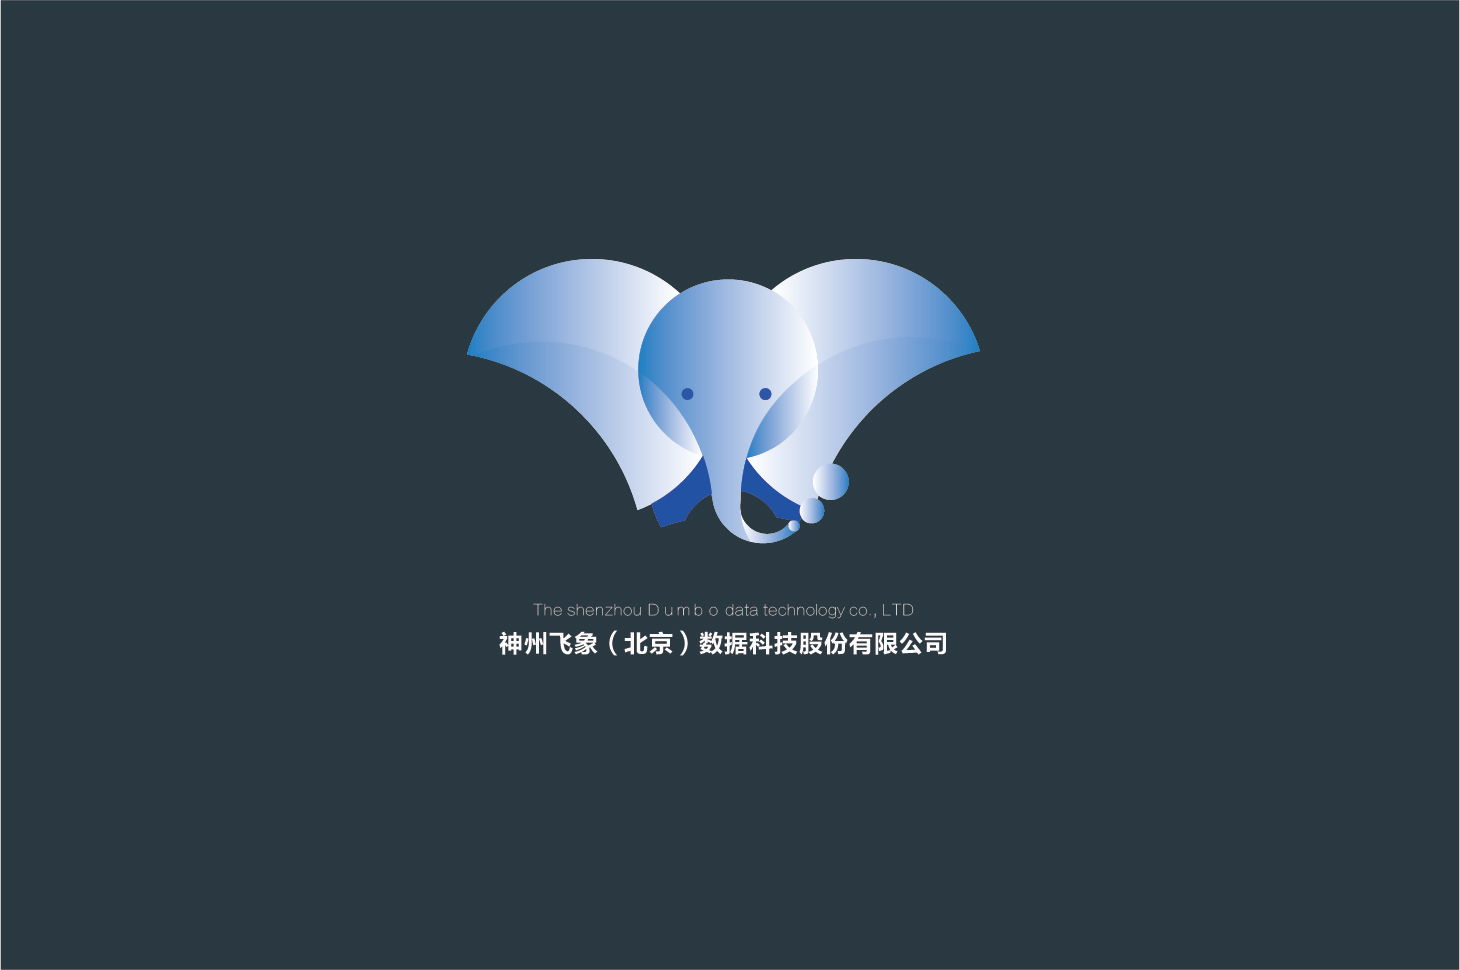 原创作品:飞象logo